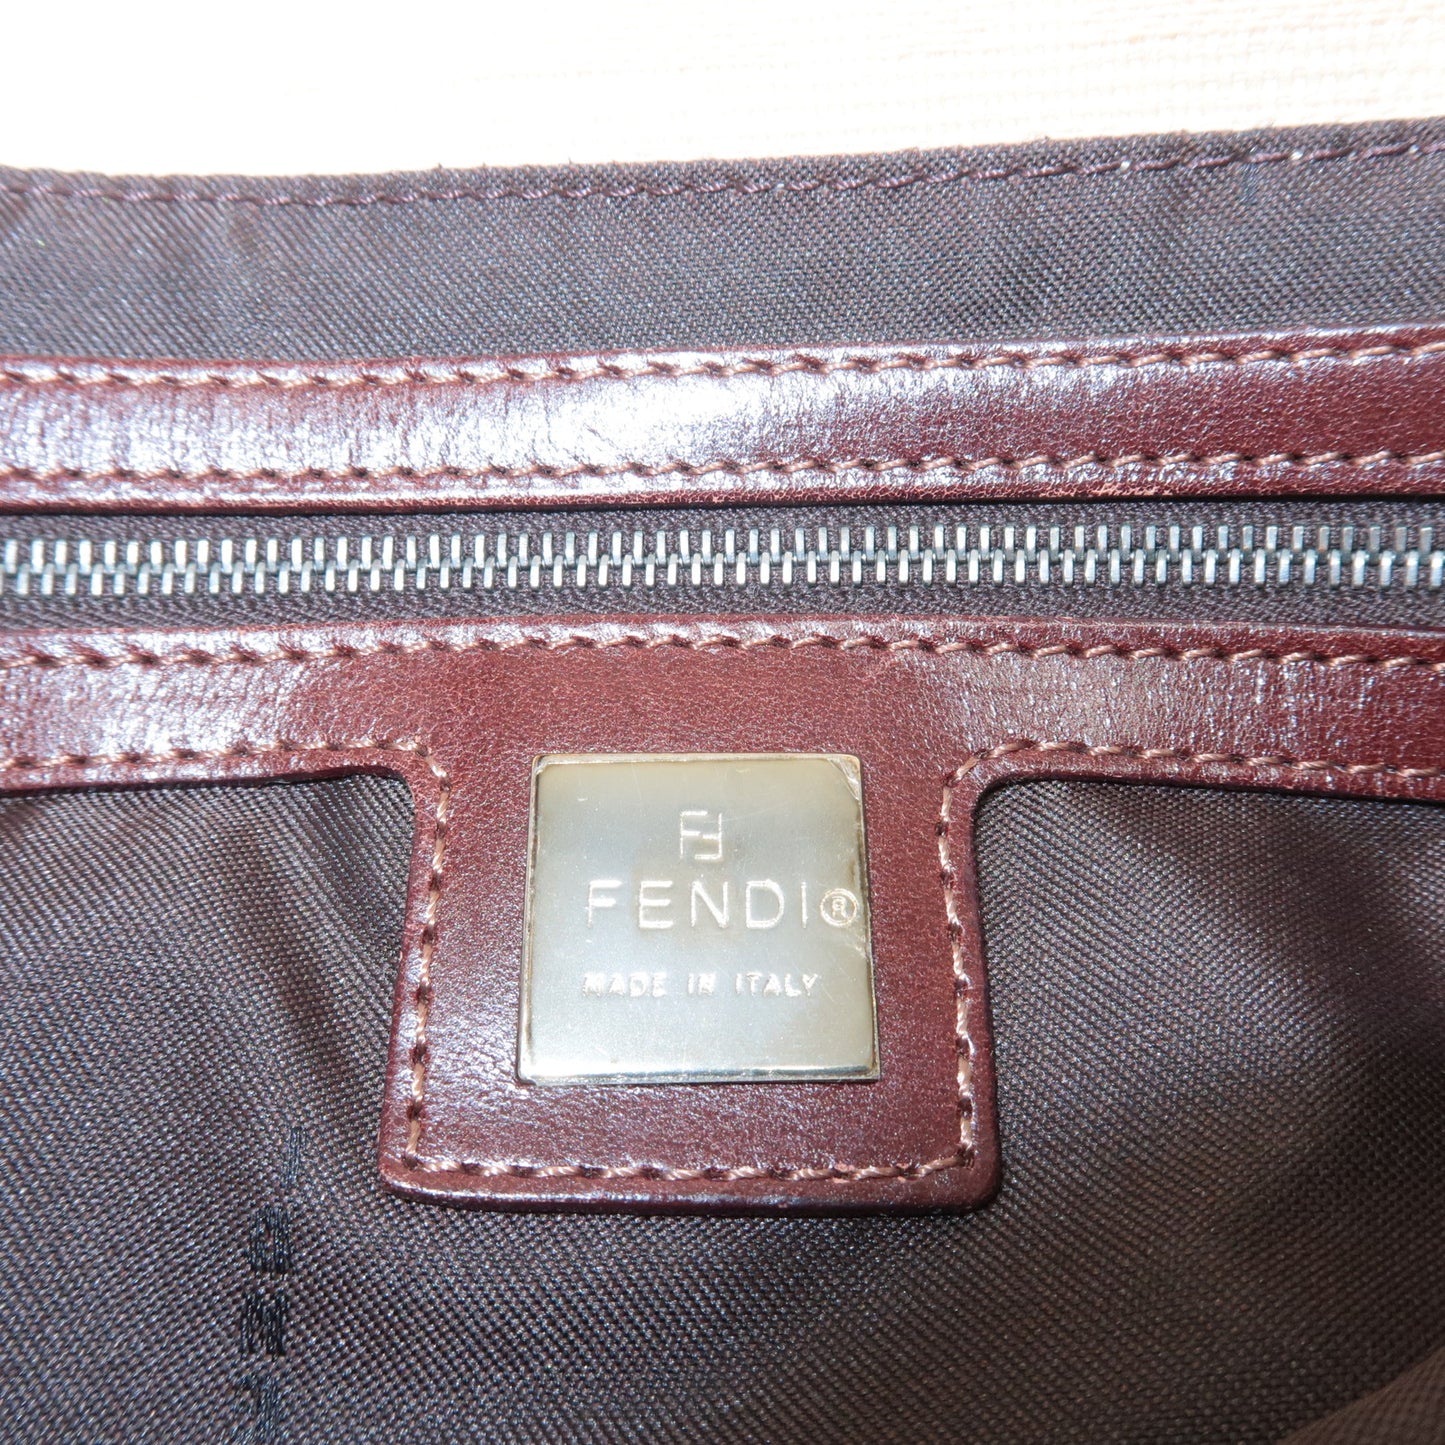 FENDI Zucca Canvas Leather Shoulder Bag Brown Beige 26727